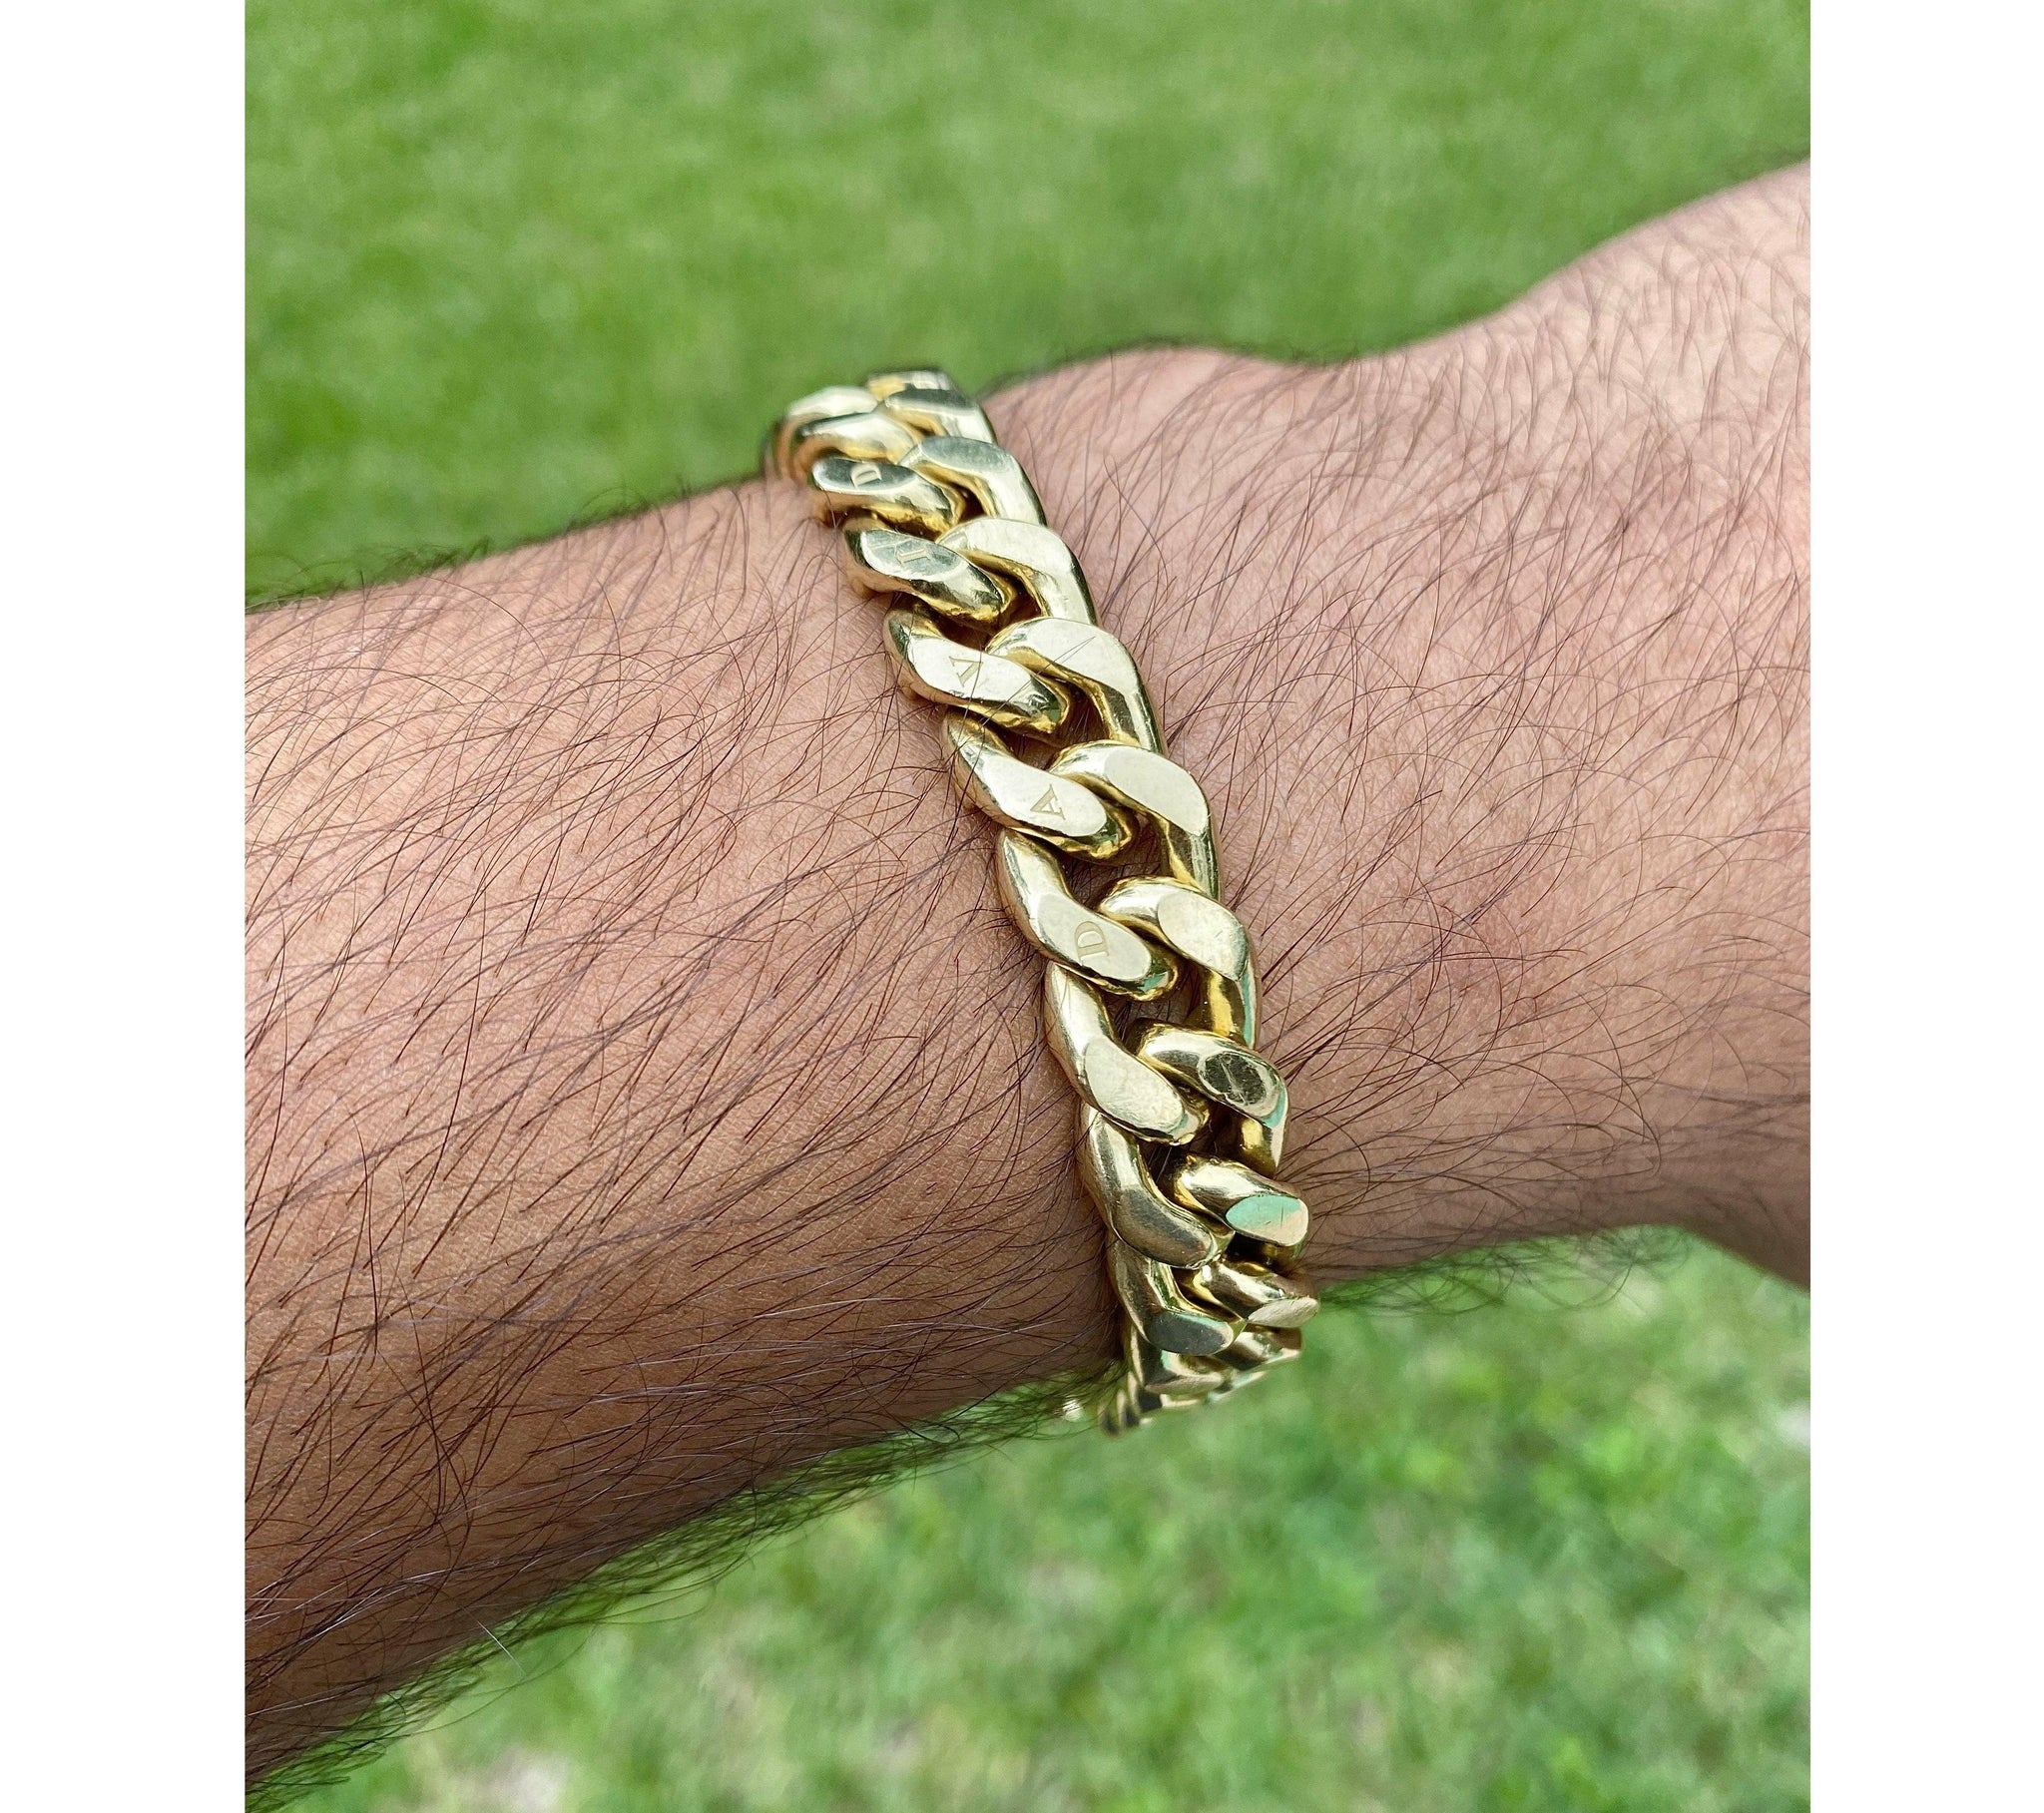 Buy Chain Bracelet, Cuban Link Bracelet, Pave Cuban Link, Curb Chain  Bracelet, Gold Chain Bracelet, Gold Bracelet, Gift for Her, Bracelet Online  in India - Etsy